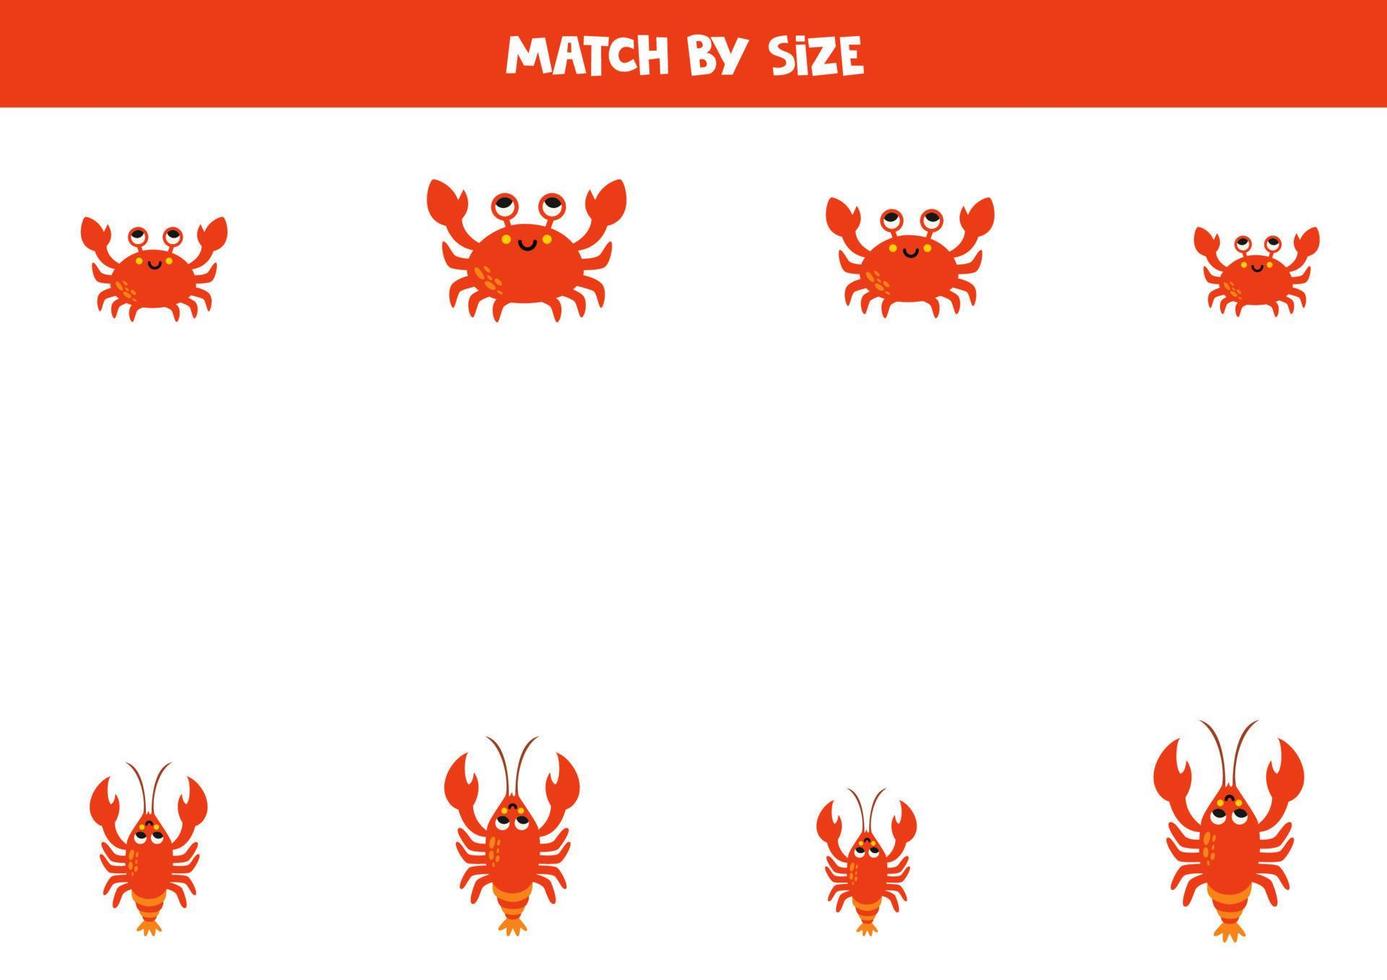 bij elkaar passen spel voor peuter- kinderen. bij elkaar passen krabben en kreeften door maat. vector